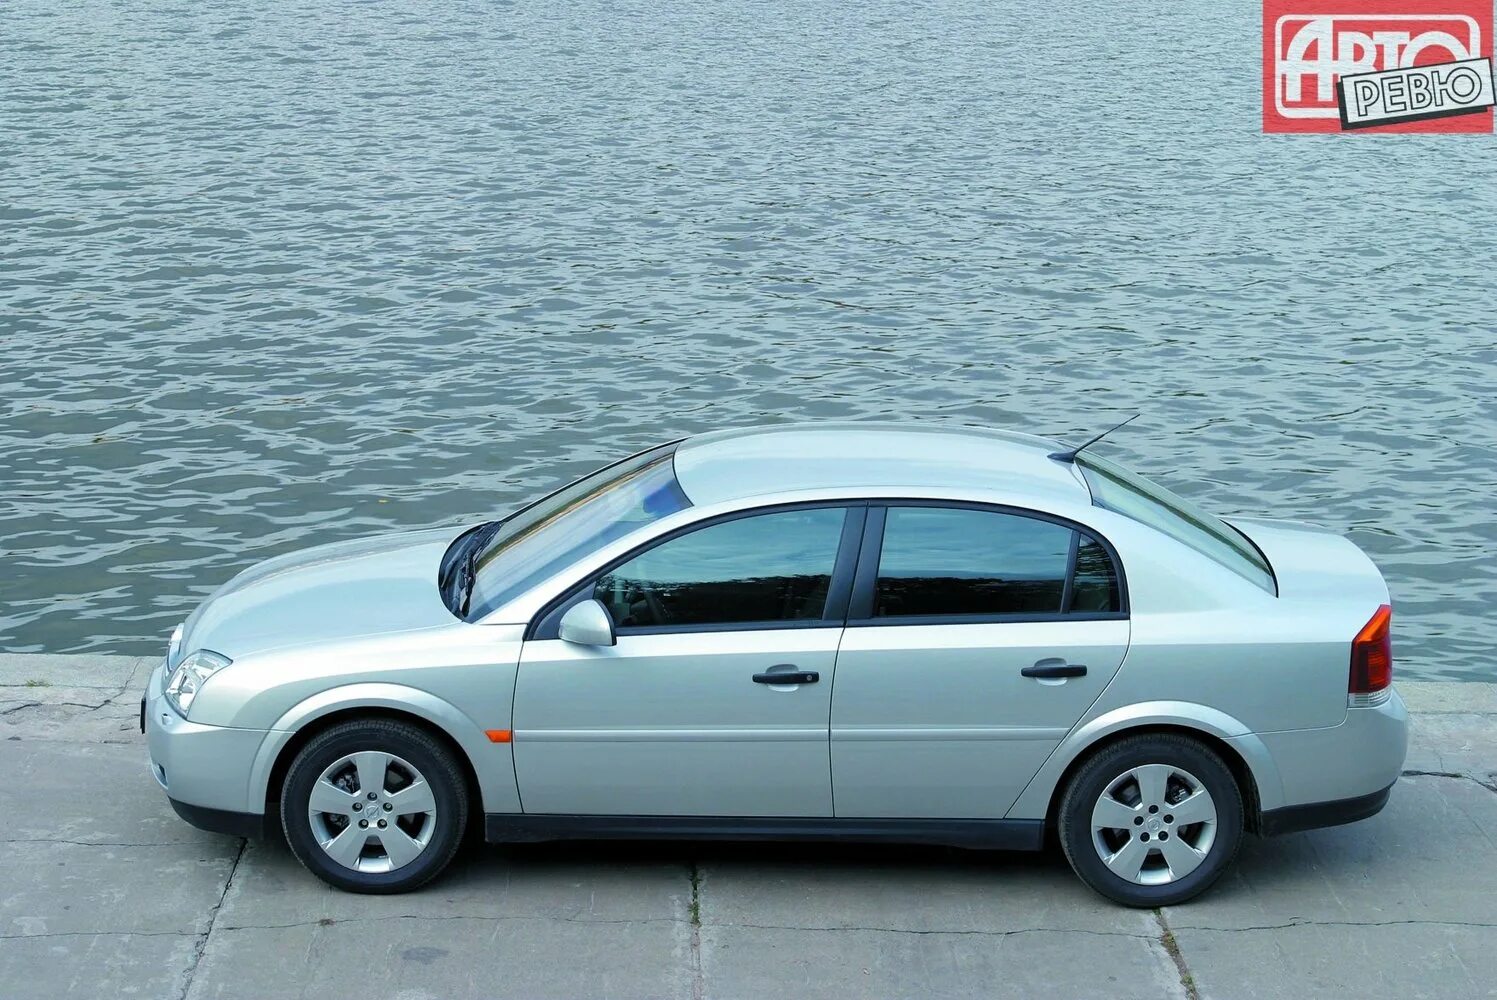 2002 г по 2005 г. Opel Vectra c 2002-2005 седан. Опель Вектра седан 2002. Опель Вектра ц 2002. Opel Vectra c 2002.